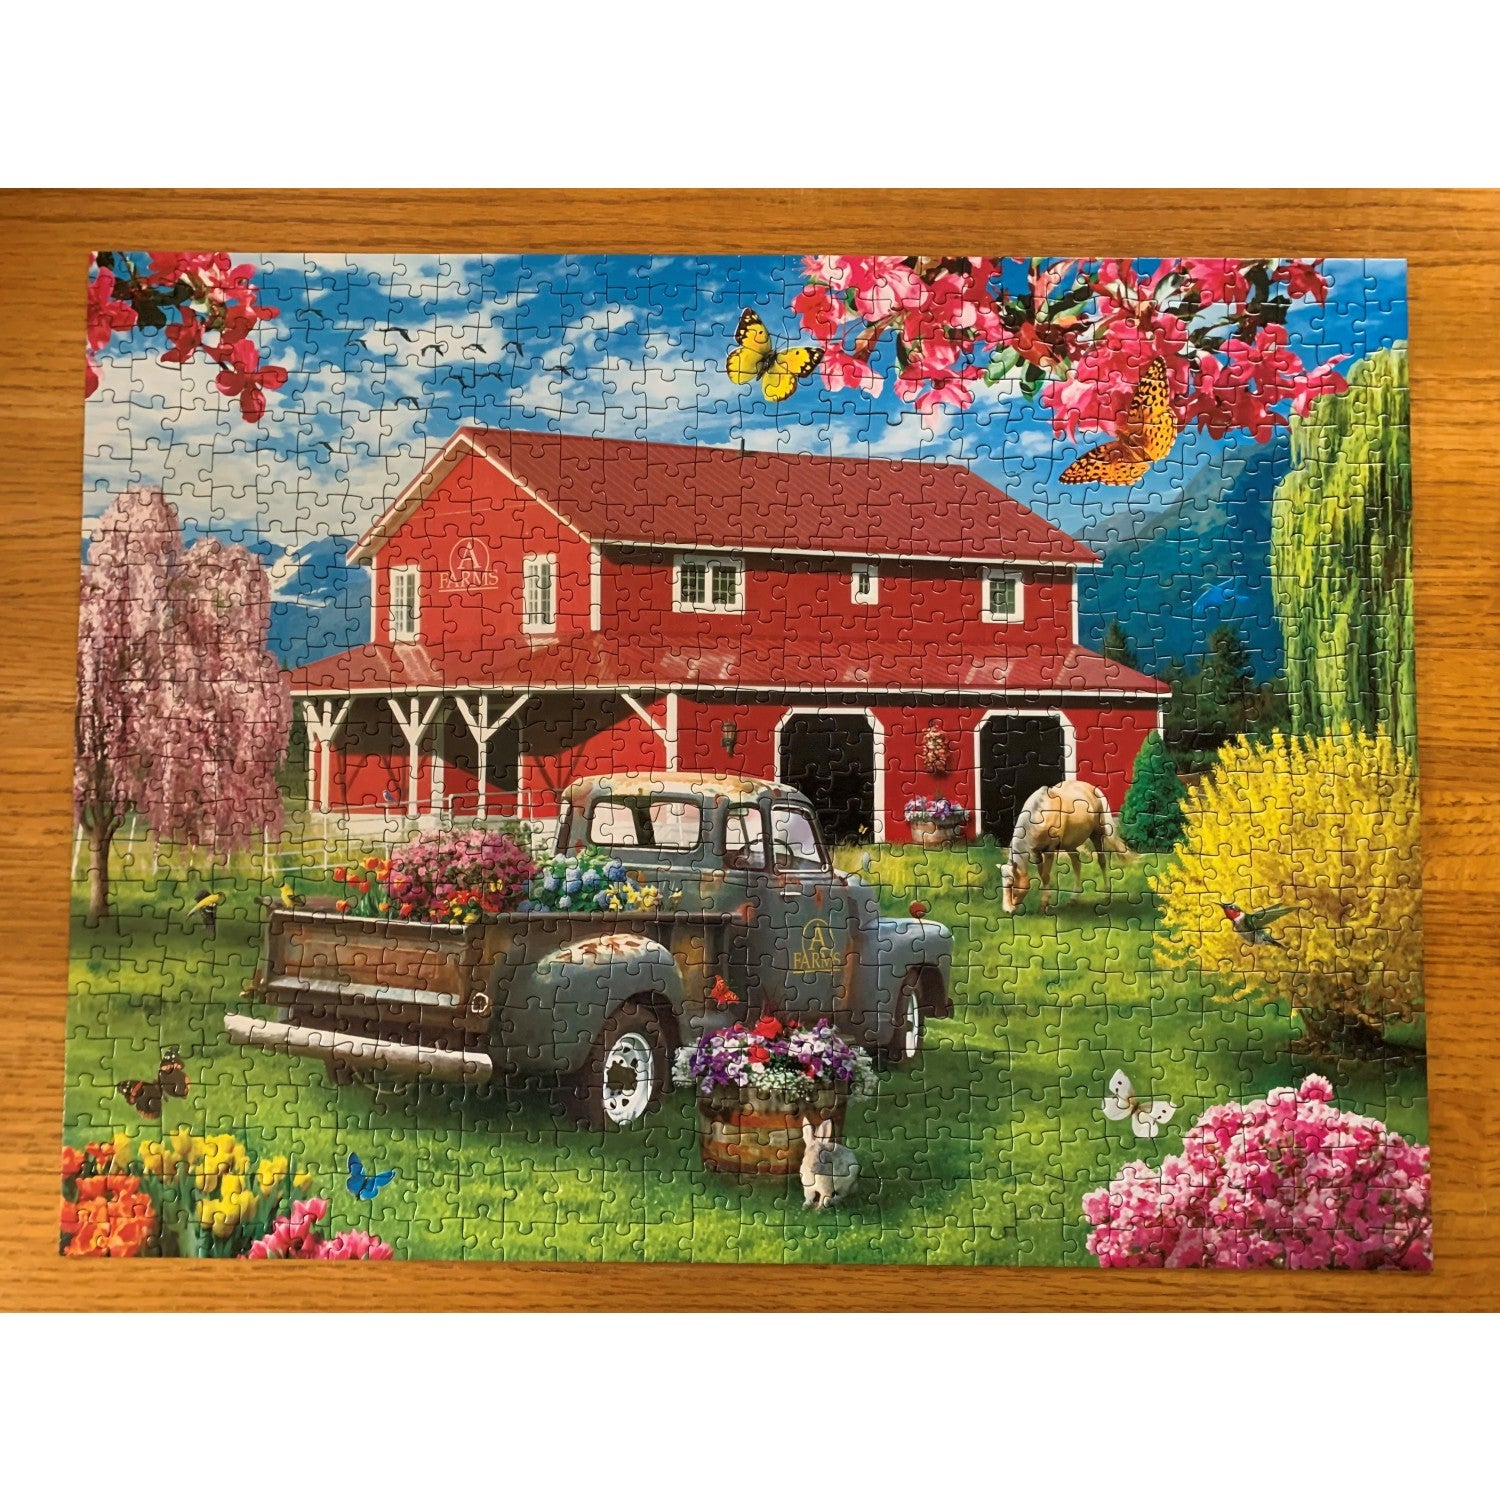 Lazy Days - A Farm's Alive 750 Piece Jigsaw Puzzle